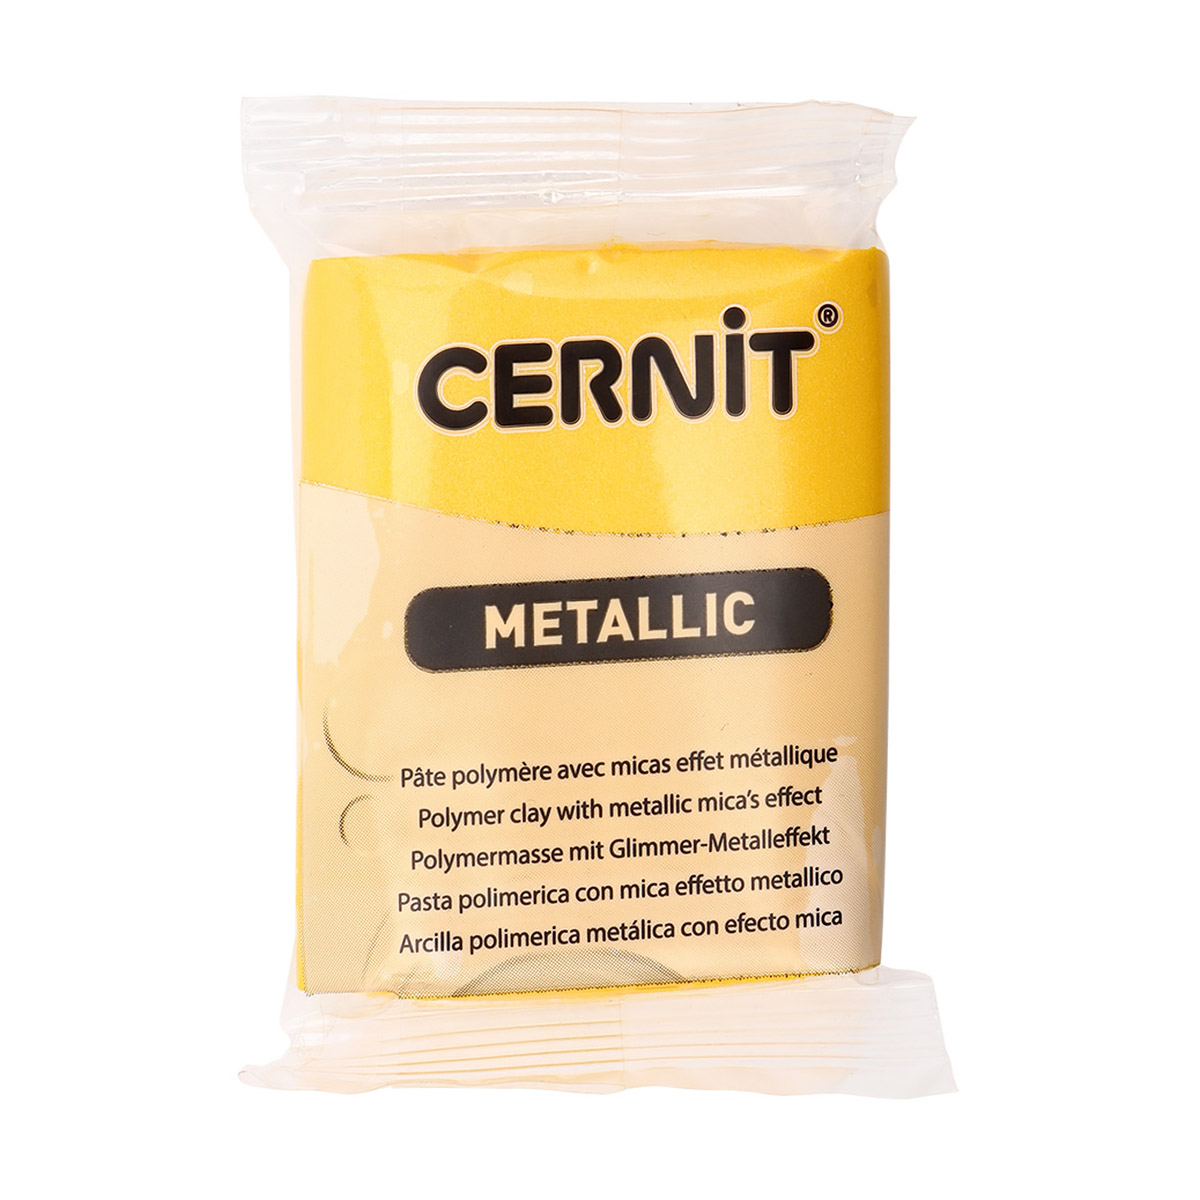 Пластика Cernit Metallic, 56 грамм, цвет 700 желтый, арт. CE0870056